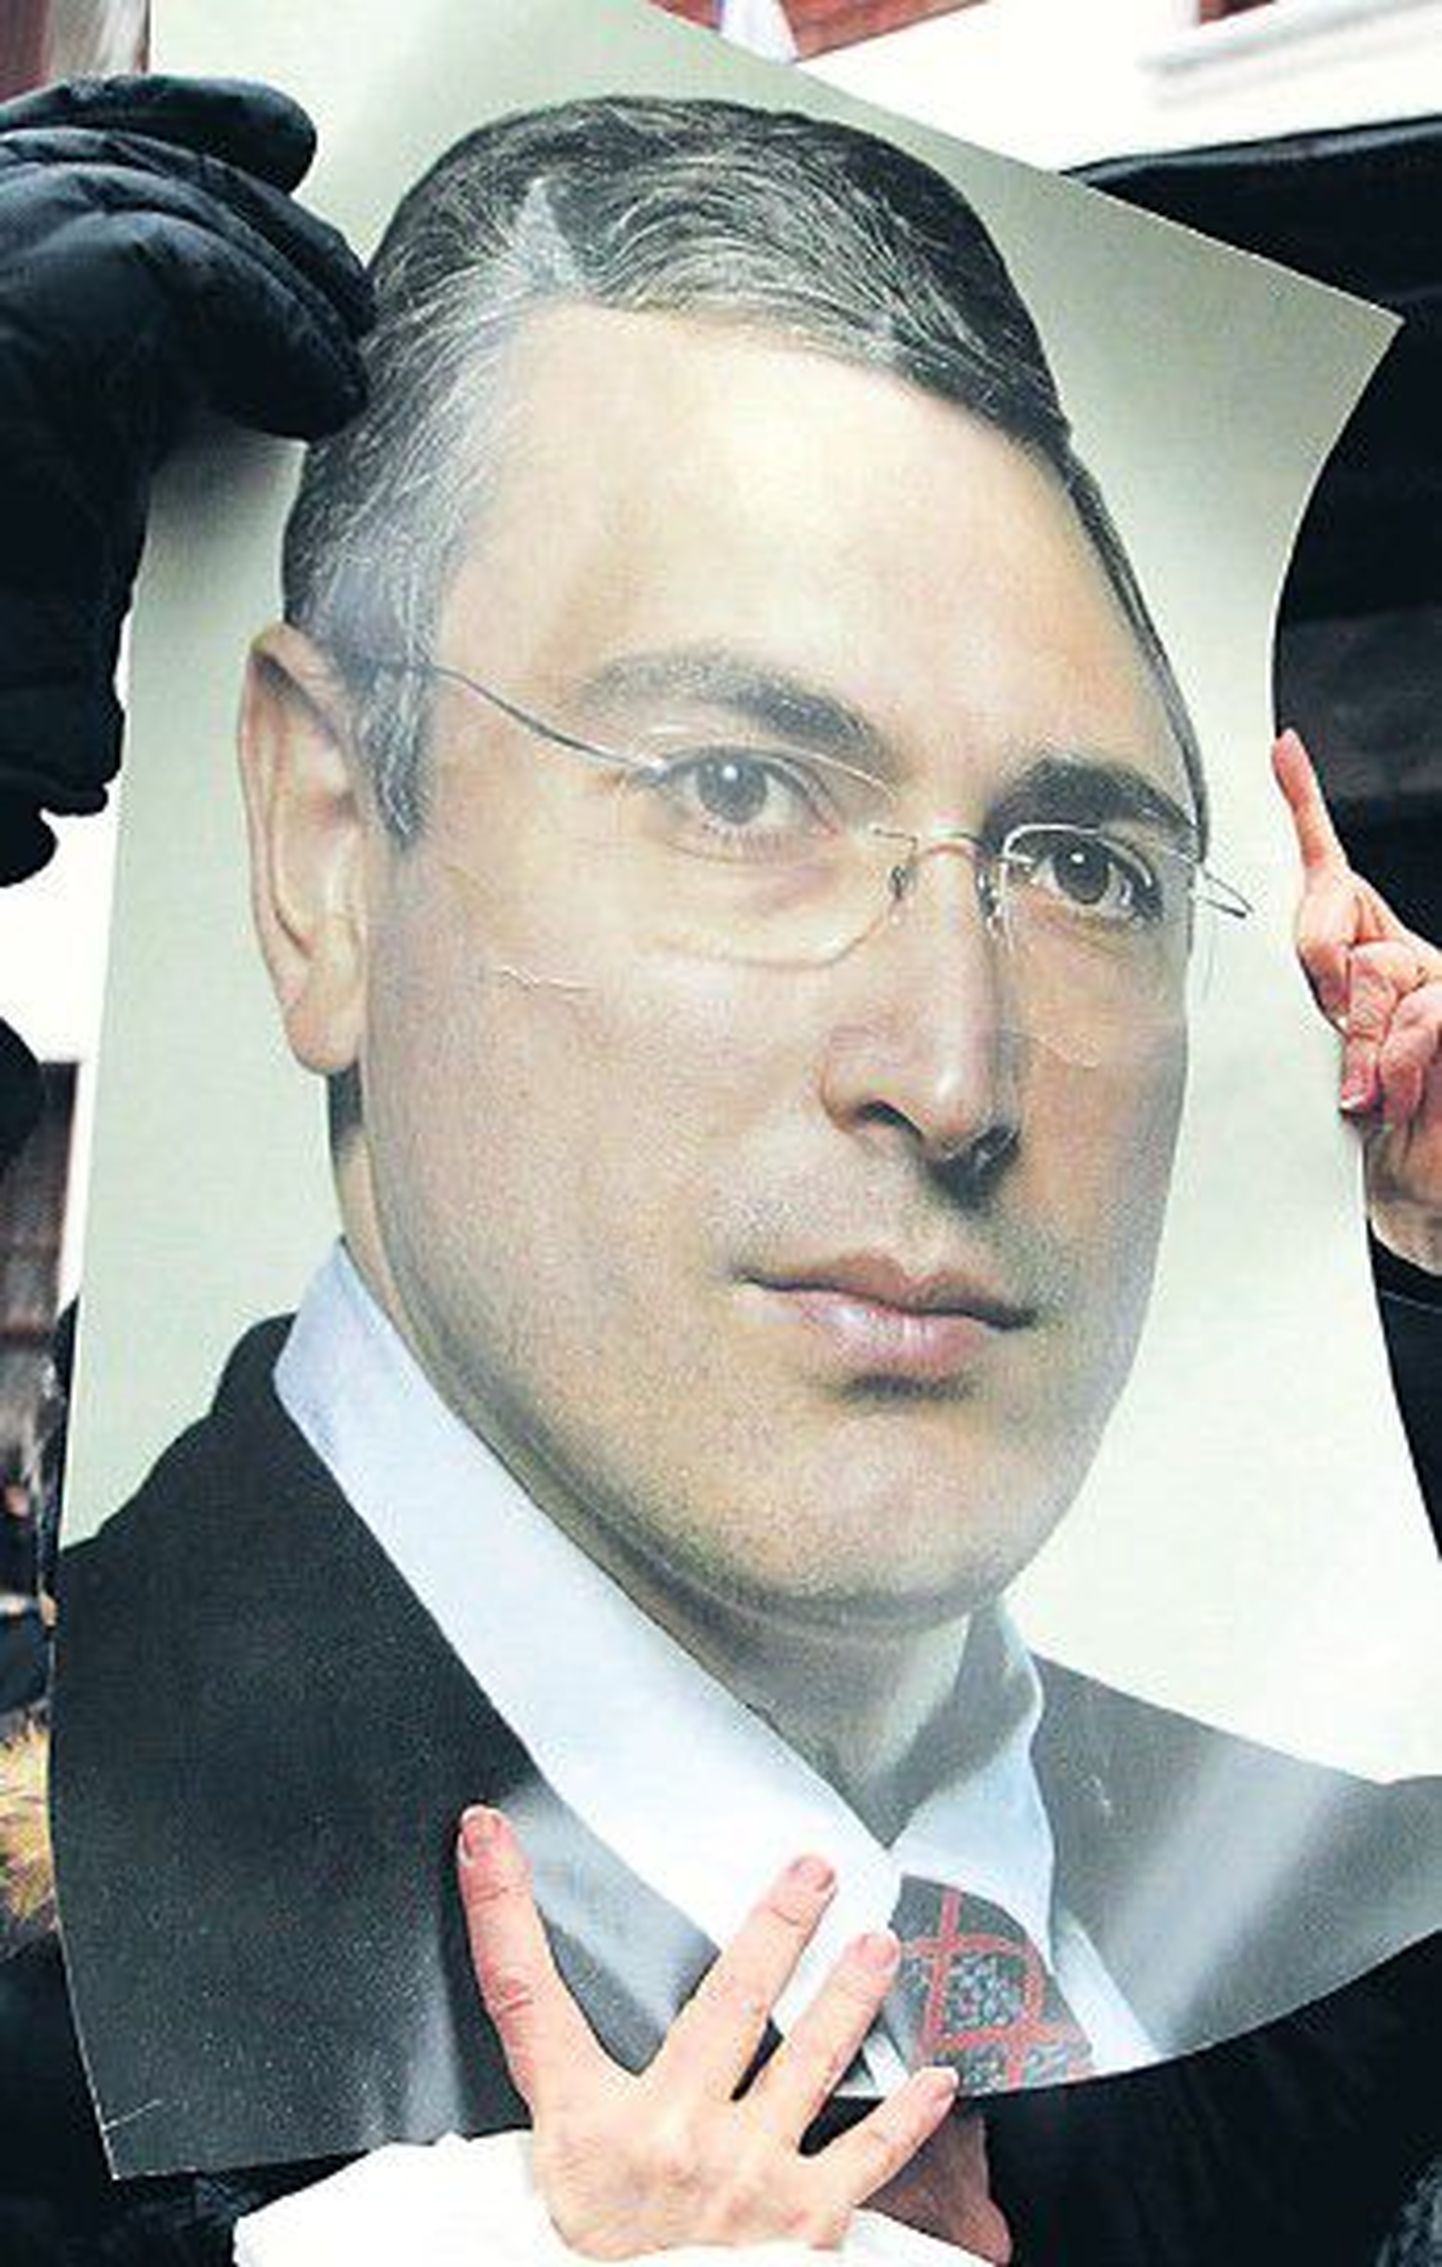 Как утверждают сторонники Михаила Ходорковского, некогда богатейшему человеку России были предъявлены сфабрикованные обвинения, поскольку он осмелился финансировать оппозицию Владимира Путина.